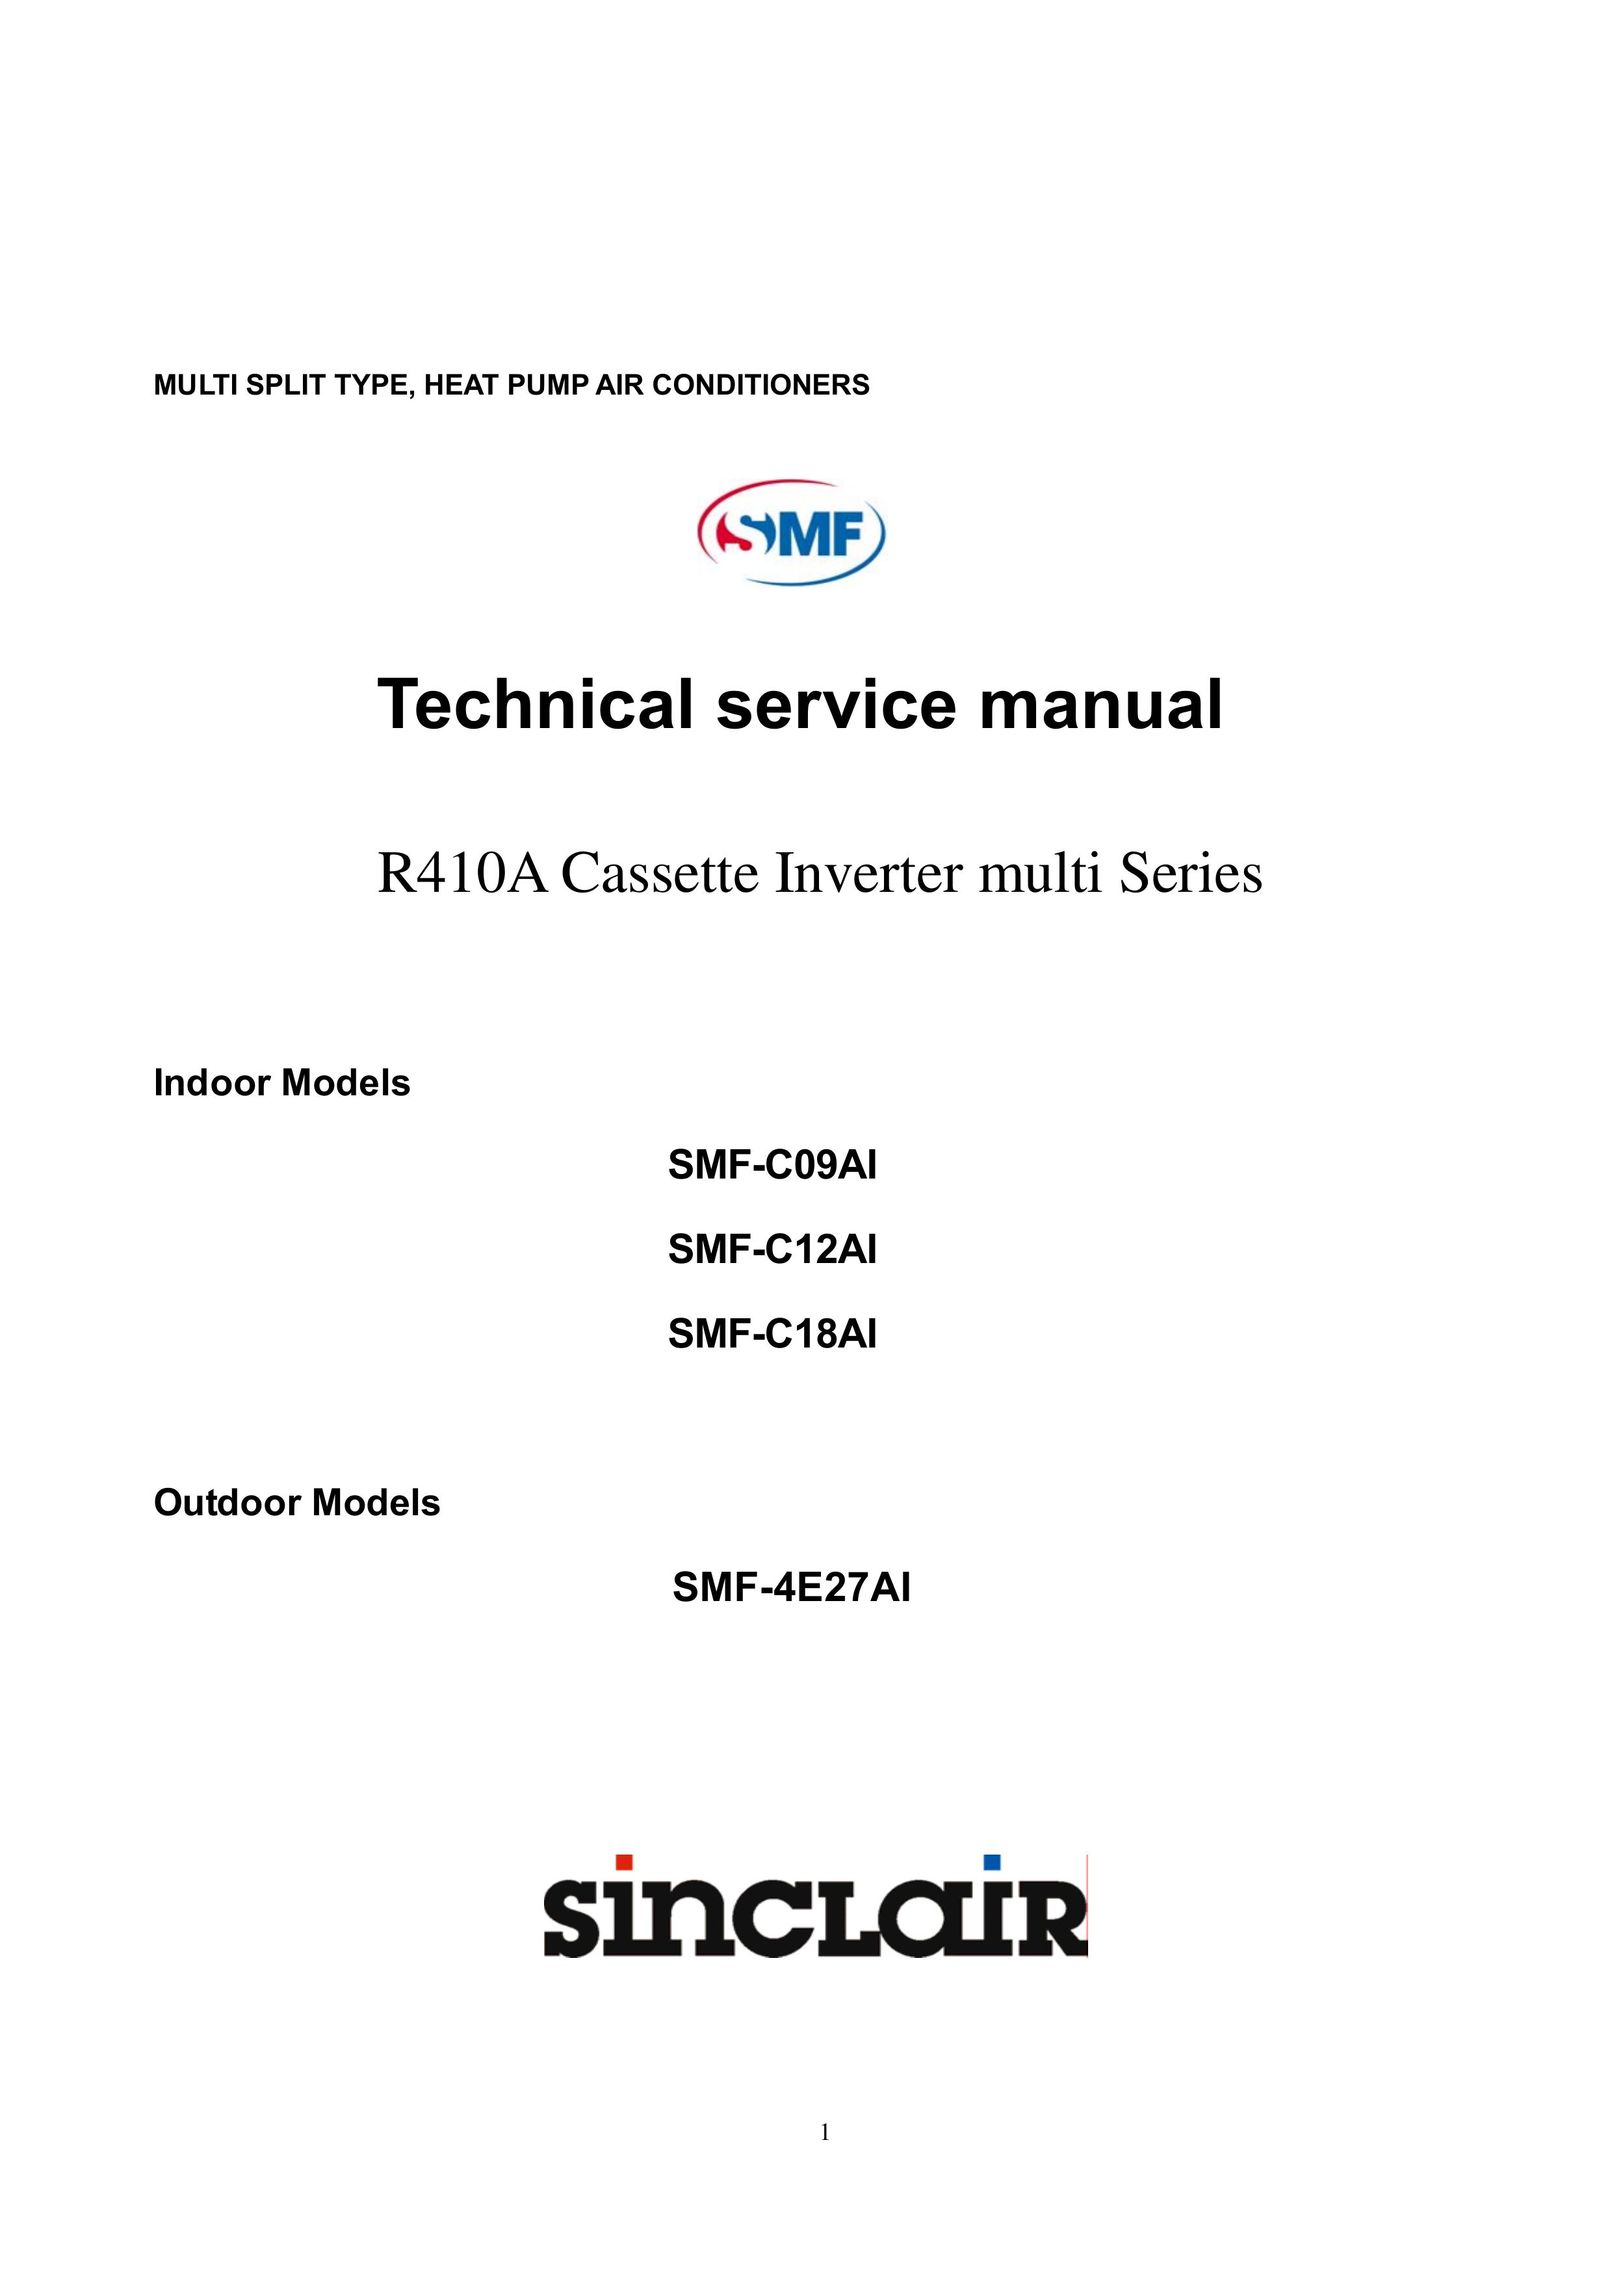 Sinclair SMF-C12AI Air Conditioner User Manual